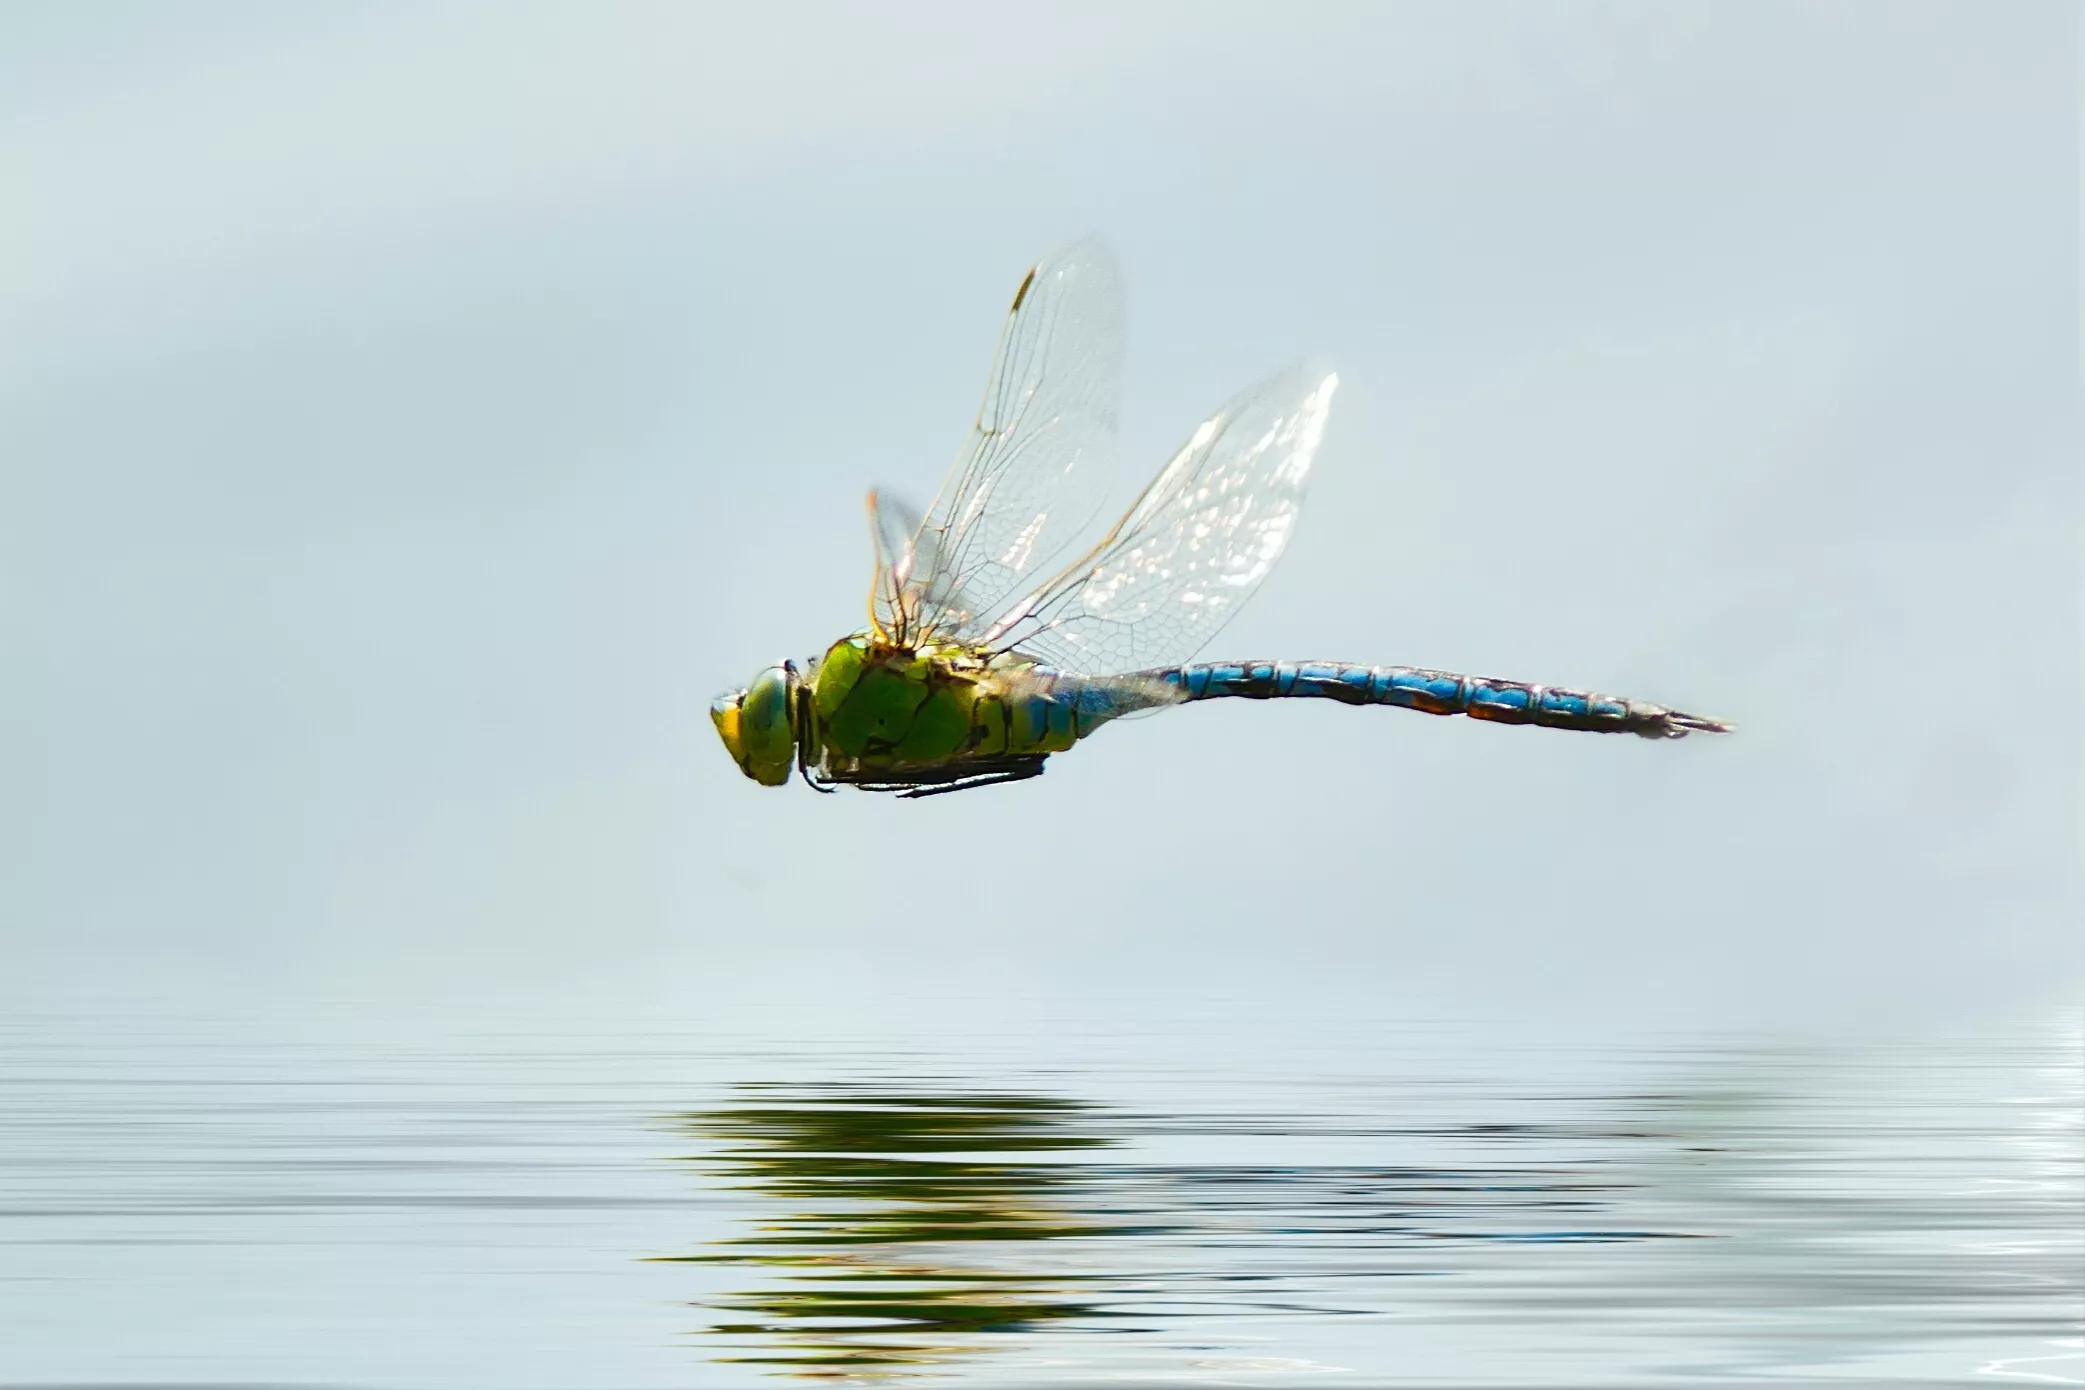 Профиль стрекозы, летящей над водой